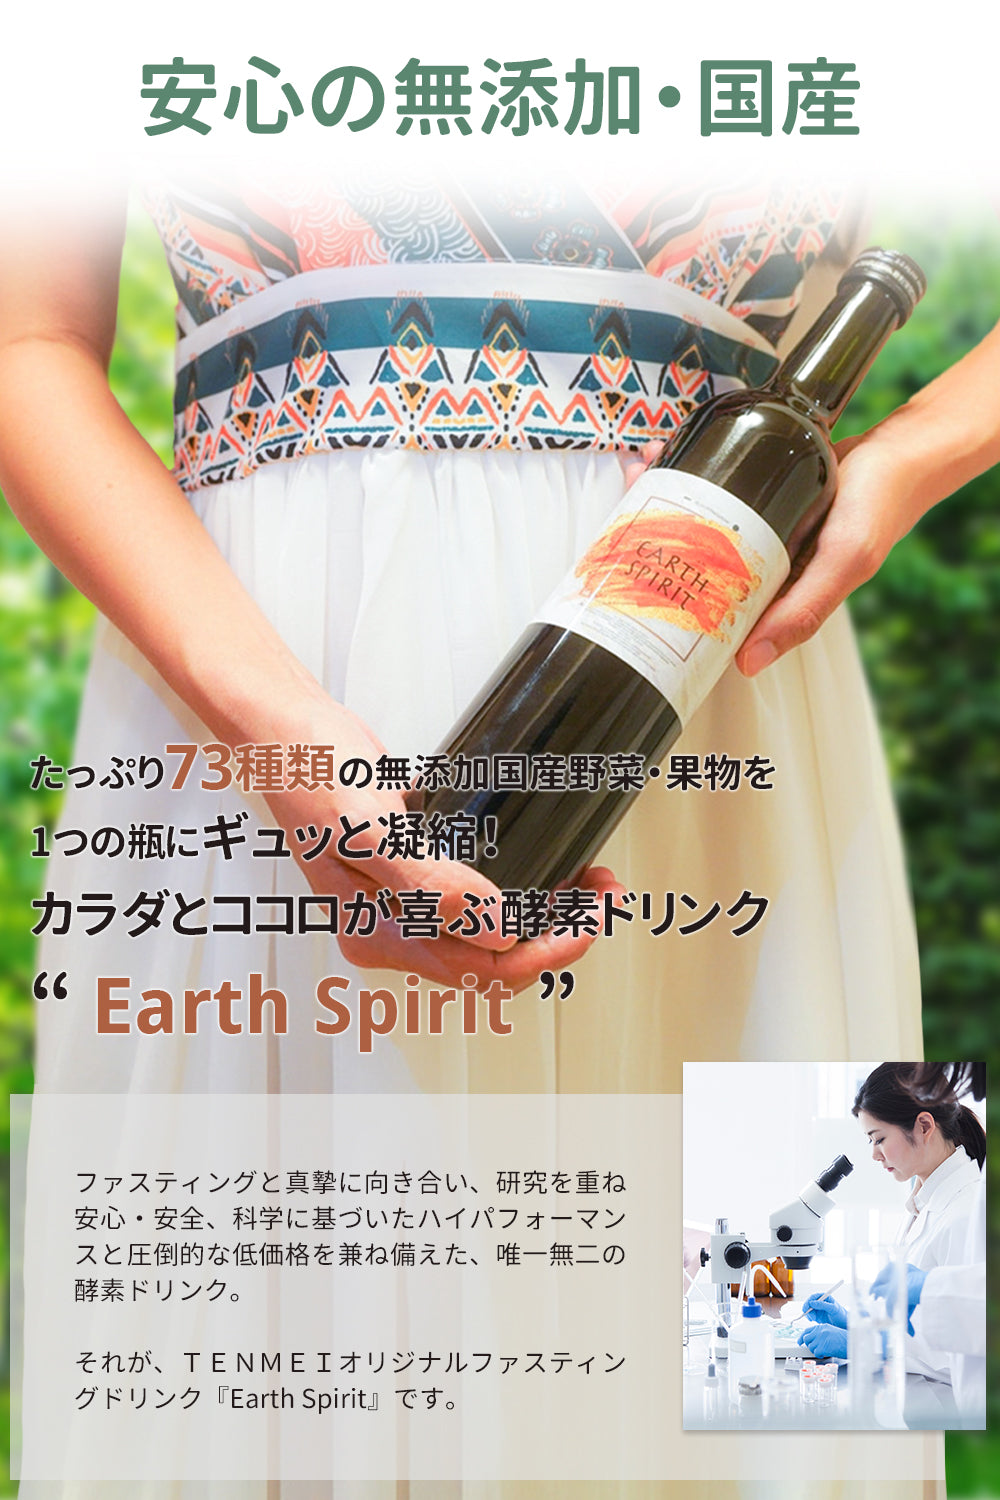 TENMEIオリジナルファスティングドリンク『Earth Spirit』 – TENMEI SHOP